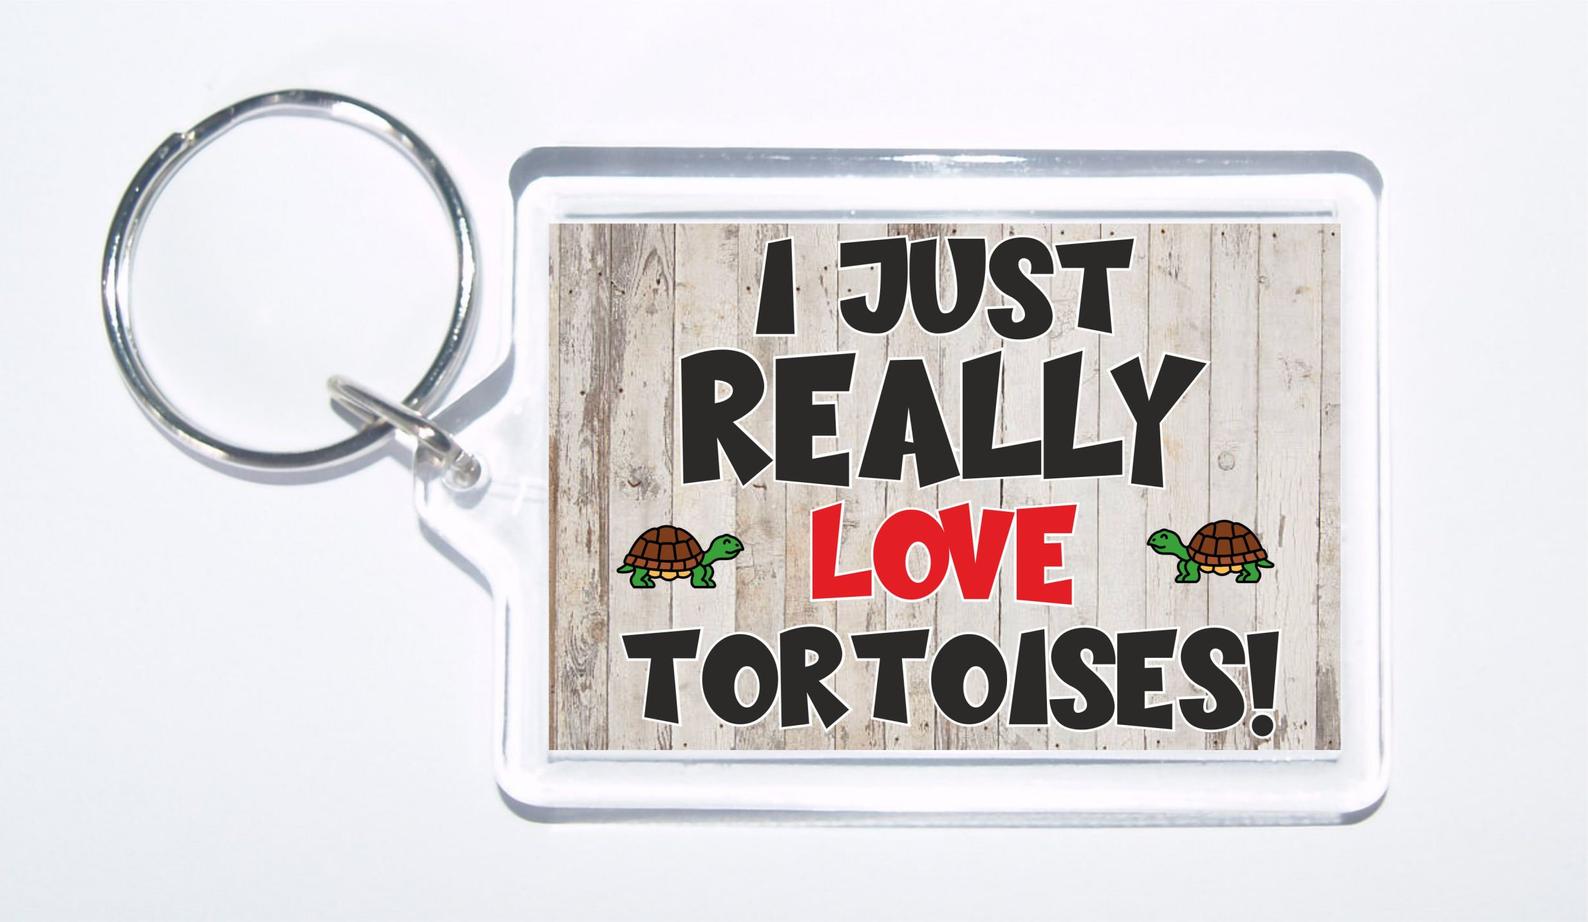 Tortoise slogan novelty keyring - 